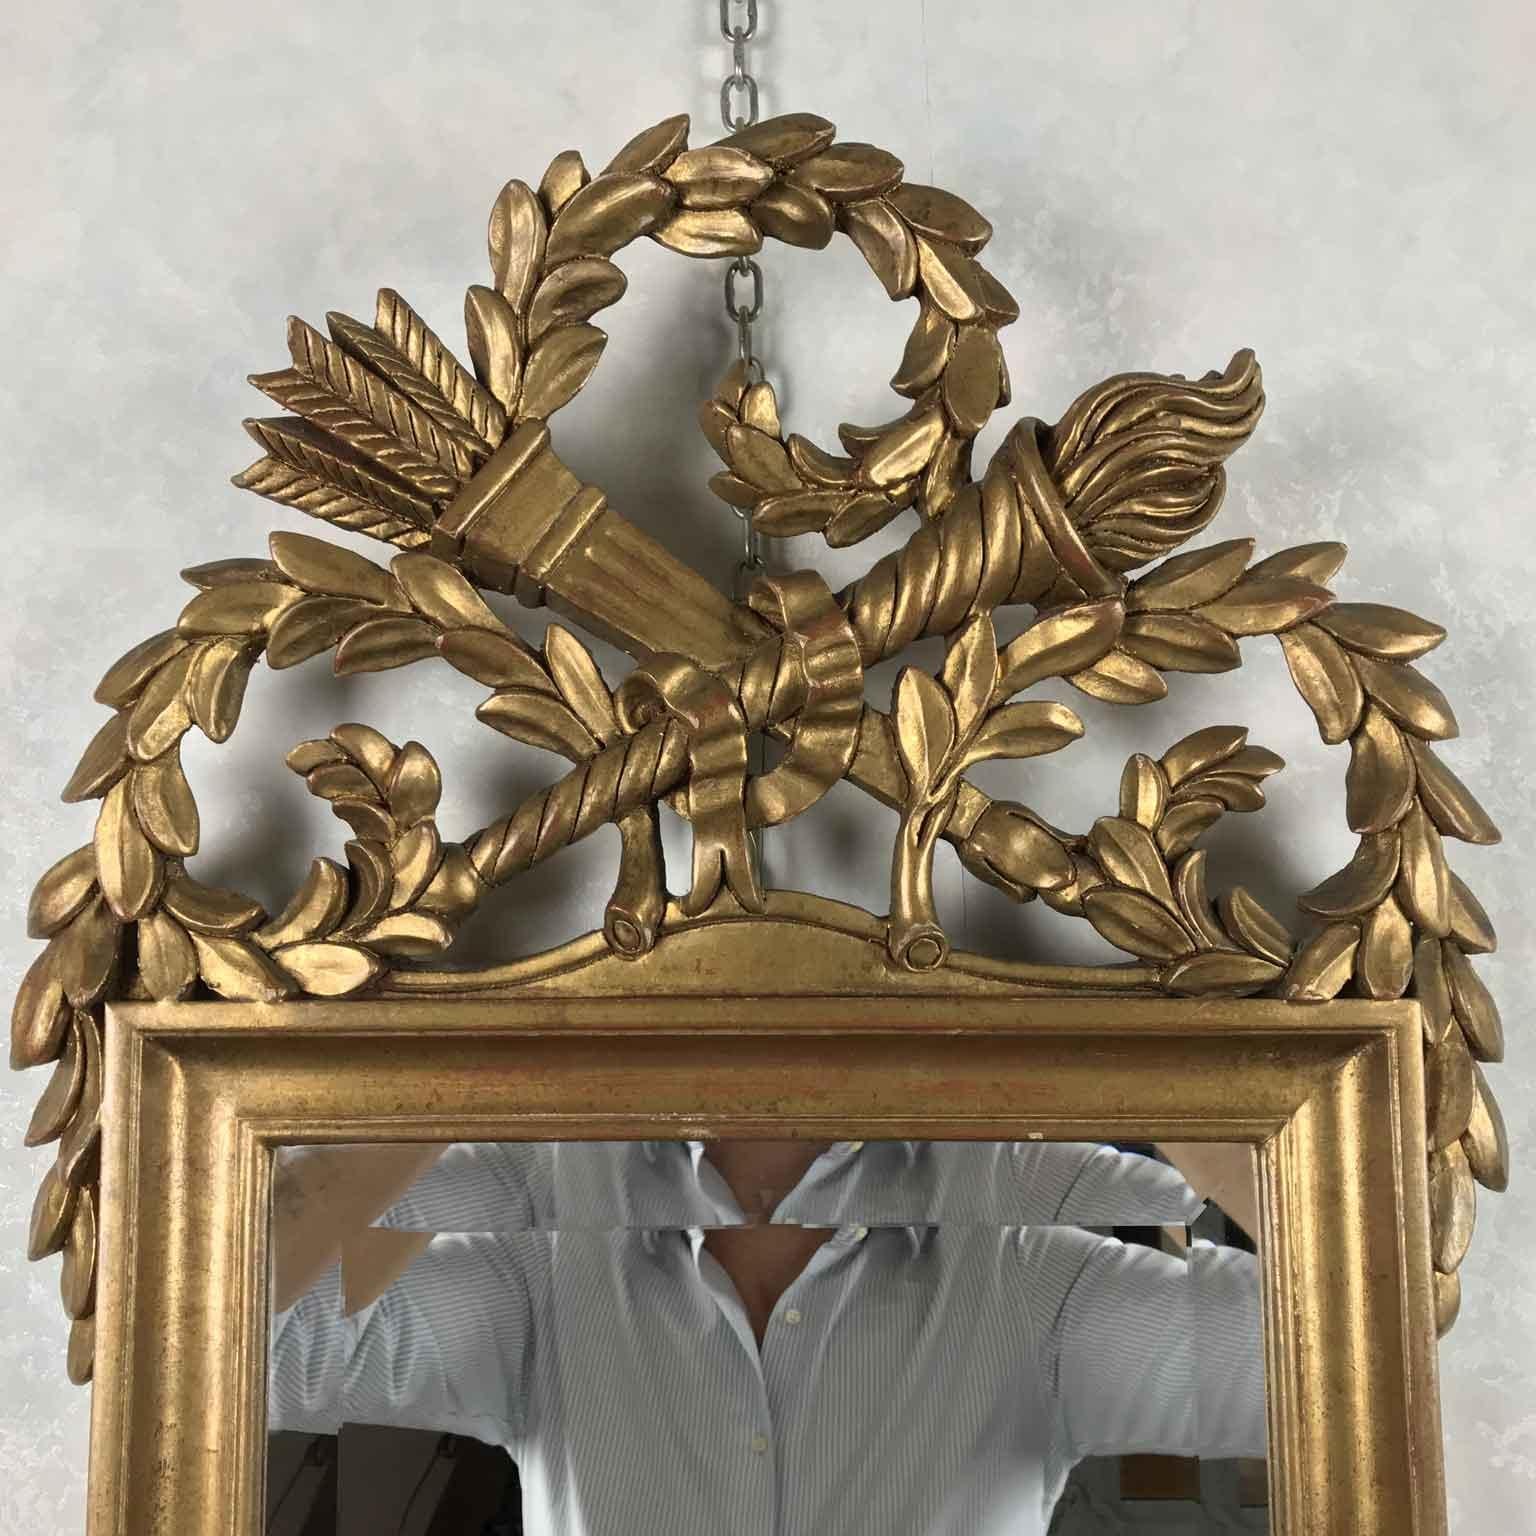 Aus Italien, von Chelini Firenze, ein schöner, blattvergoldeter Spiegel aus dem späten 20. Jahrhundert mit handgeschnitzten Elementen wie Köcher und Fackel im Empire-Stil.

Hergestellt um 1990 von Chelini Florenz, ist es in gutem altersbedingten